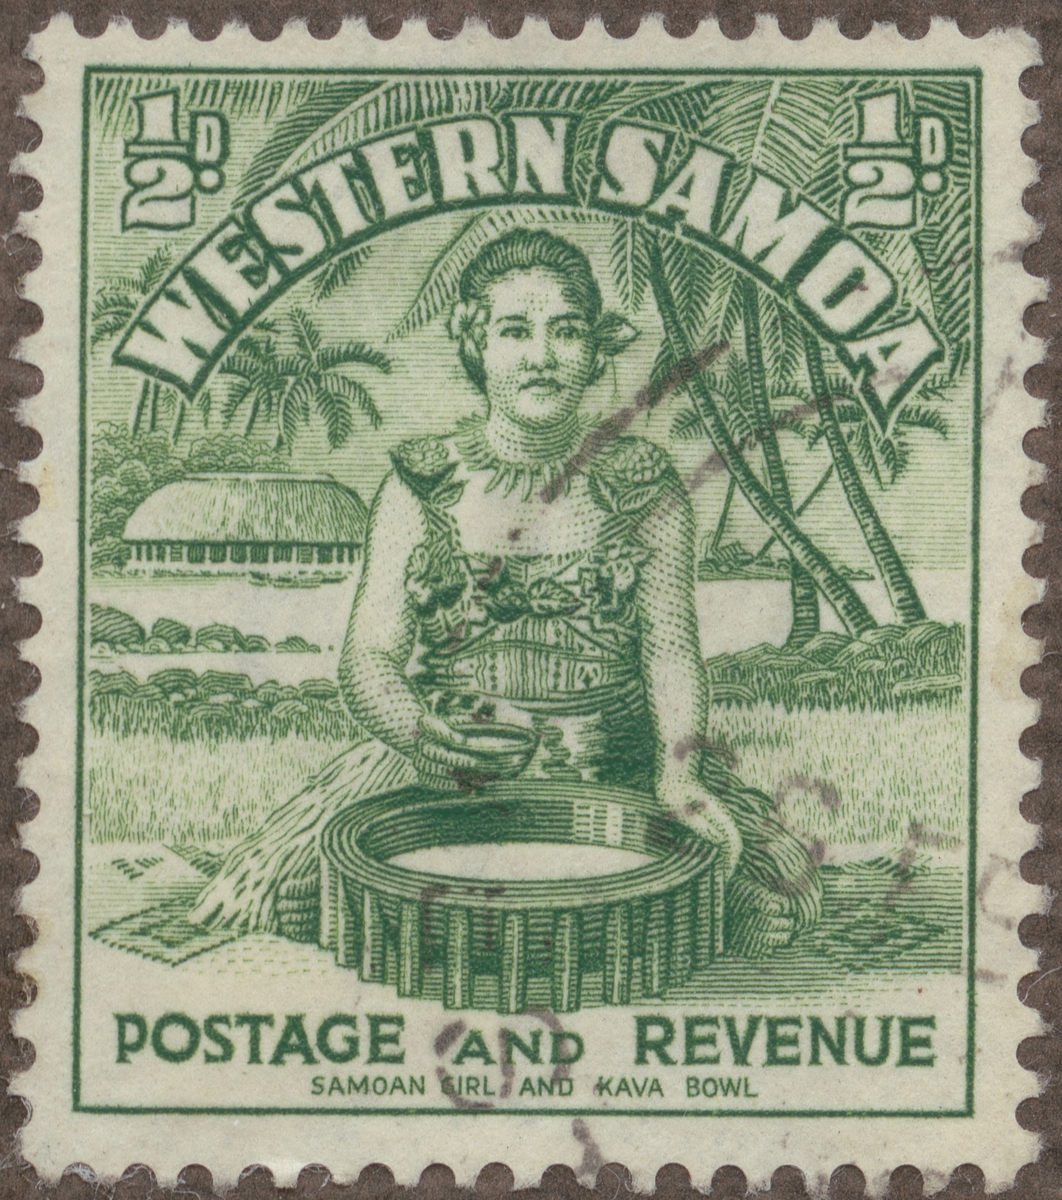 Frimärke ur Gösta Bodmans filatelistiska motivsamling, påbörjad 1950.
Frimärke från Samoa, 1935. Motiv av Kava-kavaberedning på Samoa.